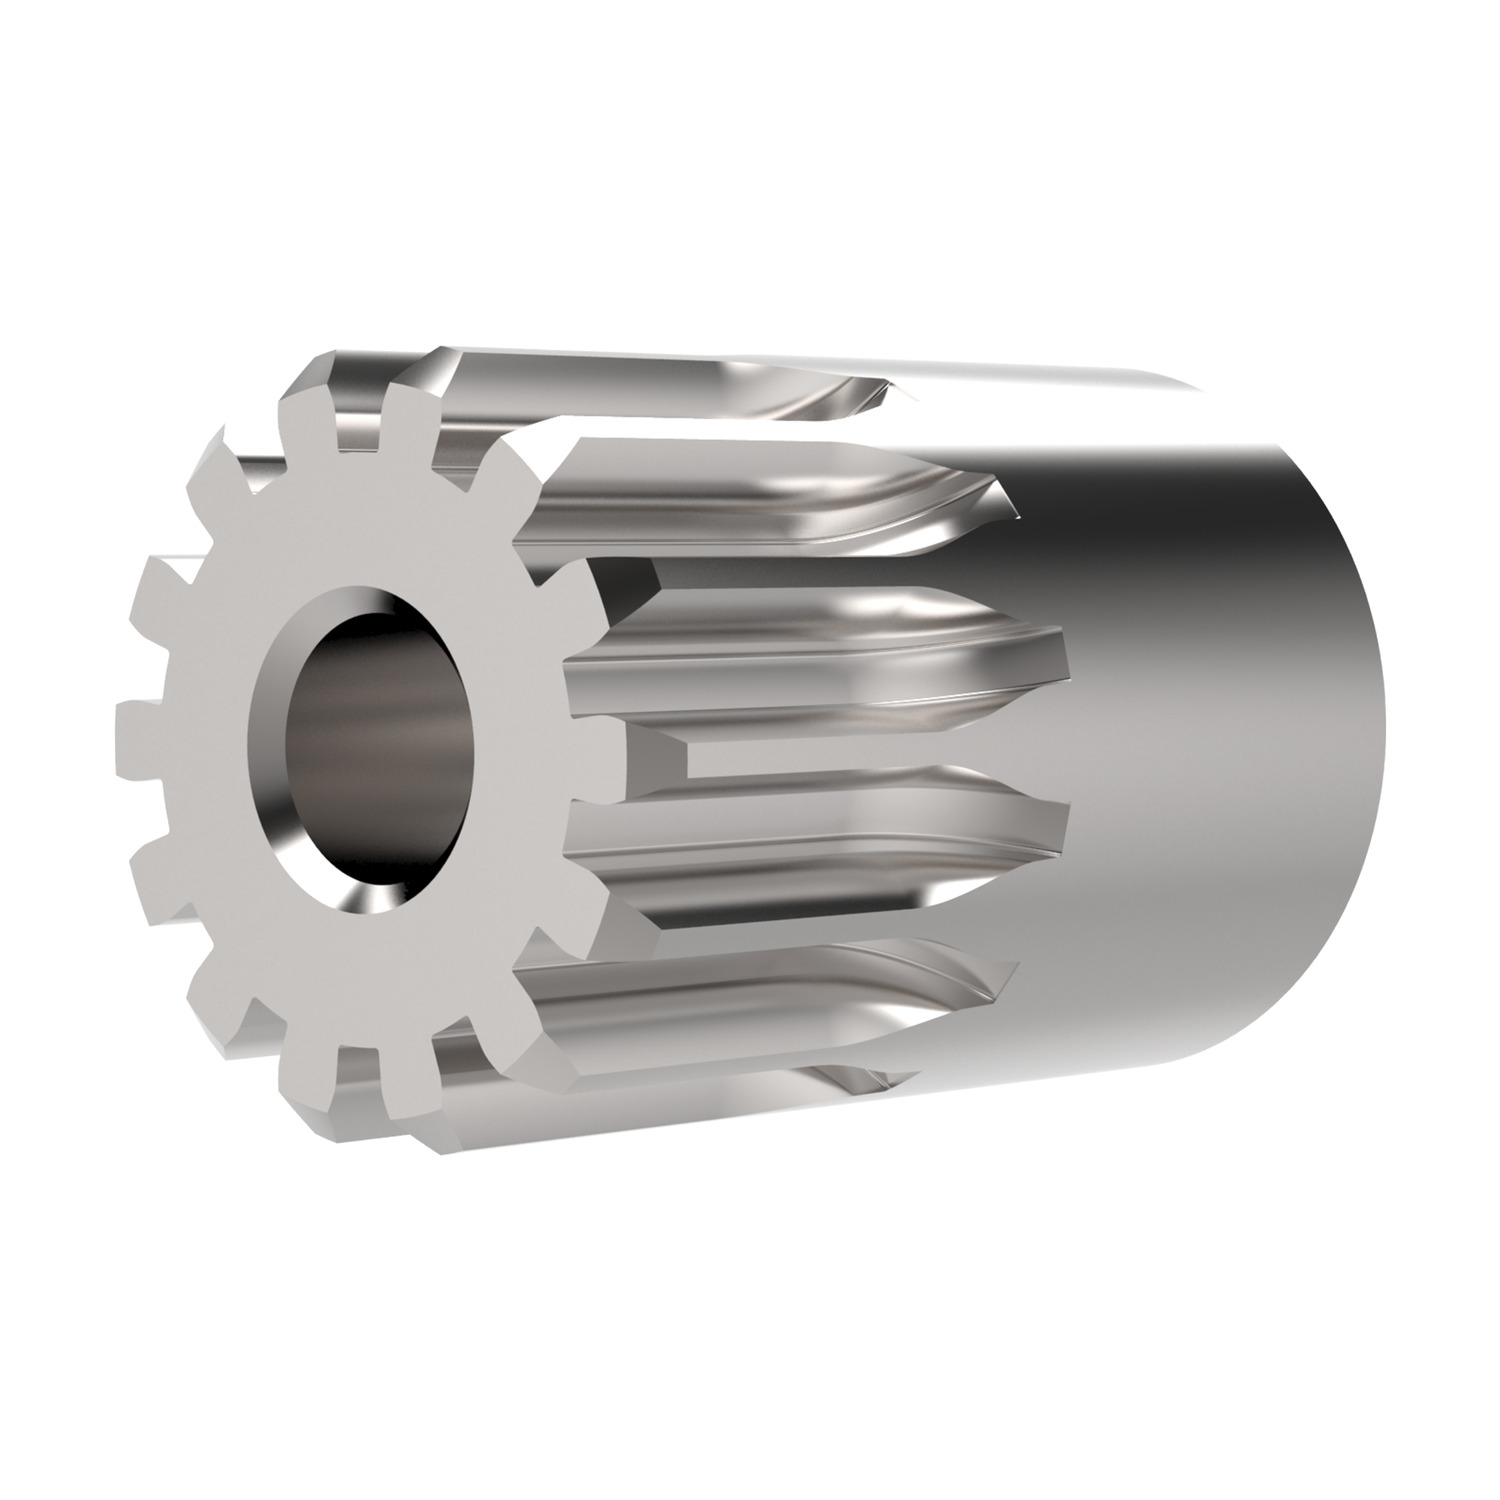 Product R5188, Spur Gears - Module 1.5 stainless steel - 14 teeth / 